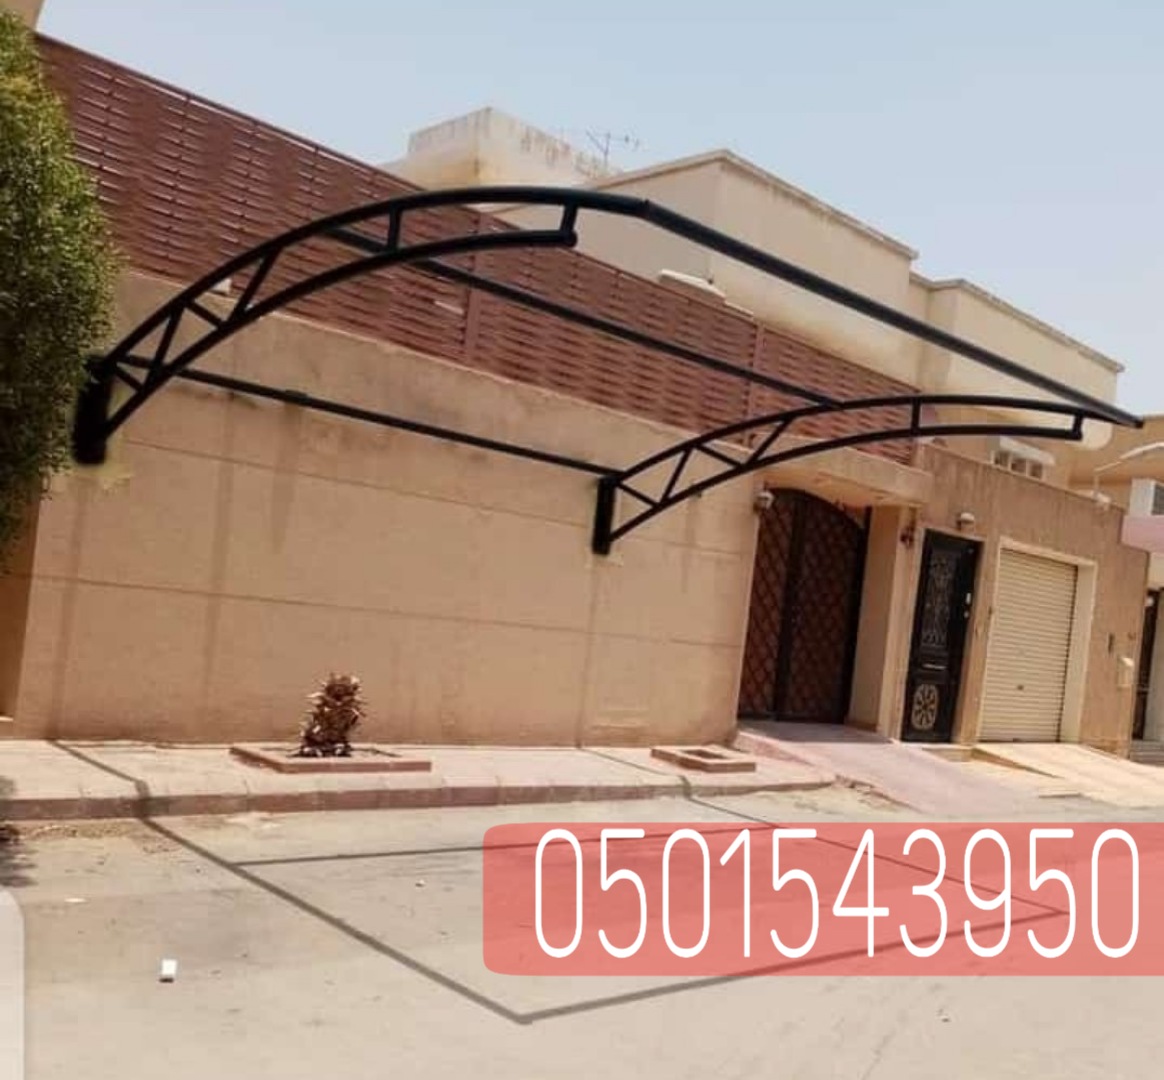 انواع مظلات السيارات في الرياض , 0501543950 P_2360wjxj22